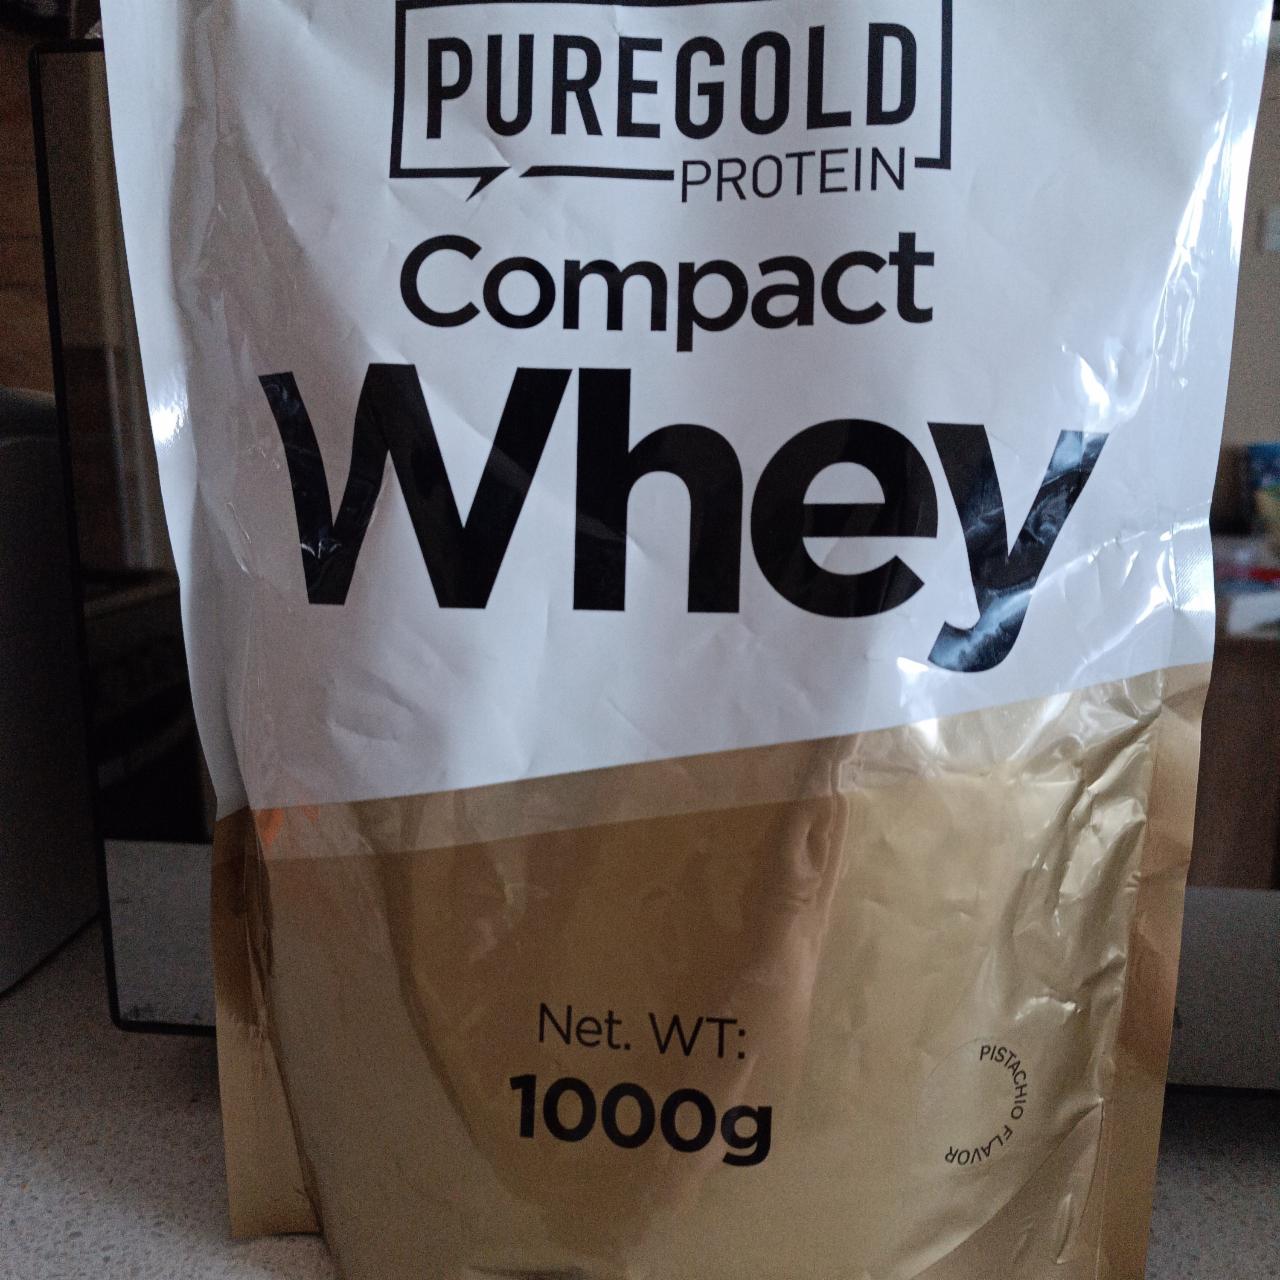 Képek - Compact Whey Pistachio Puregold protein